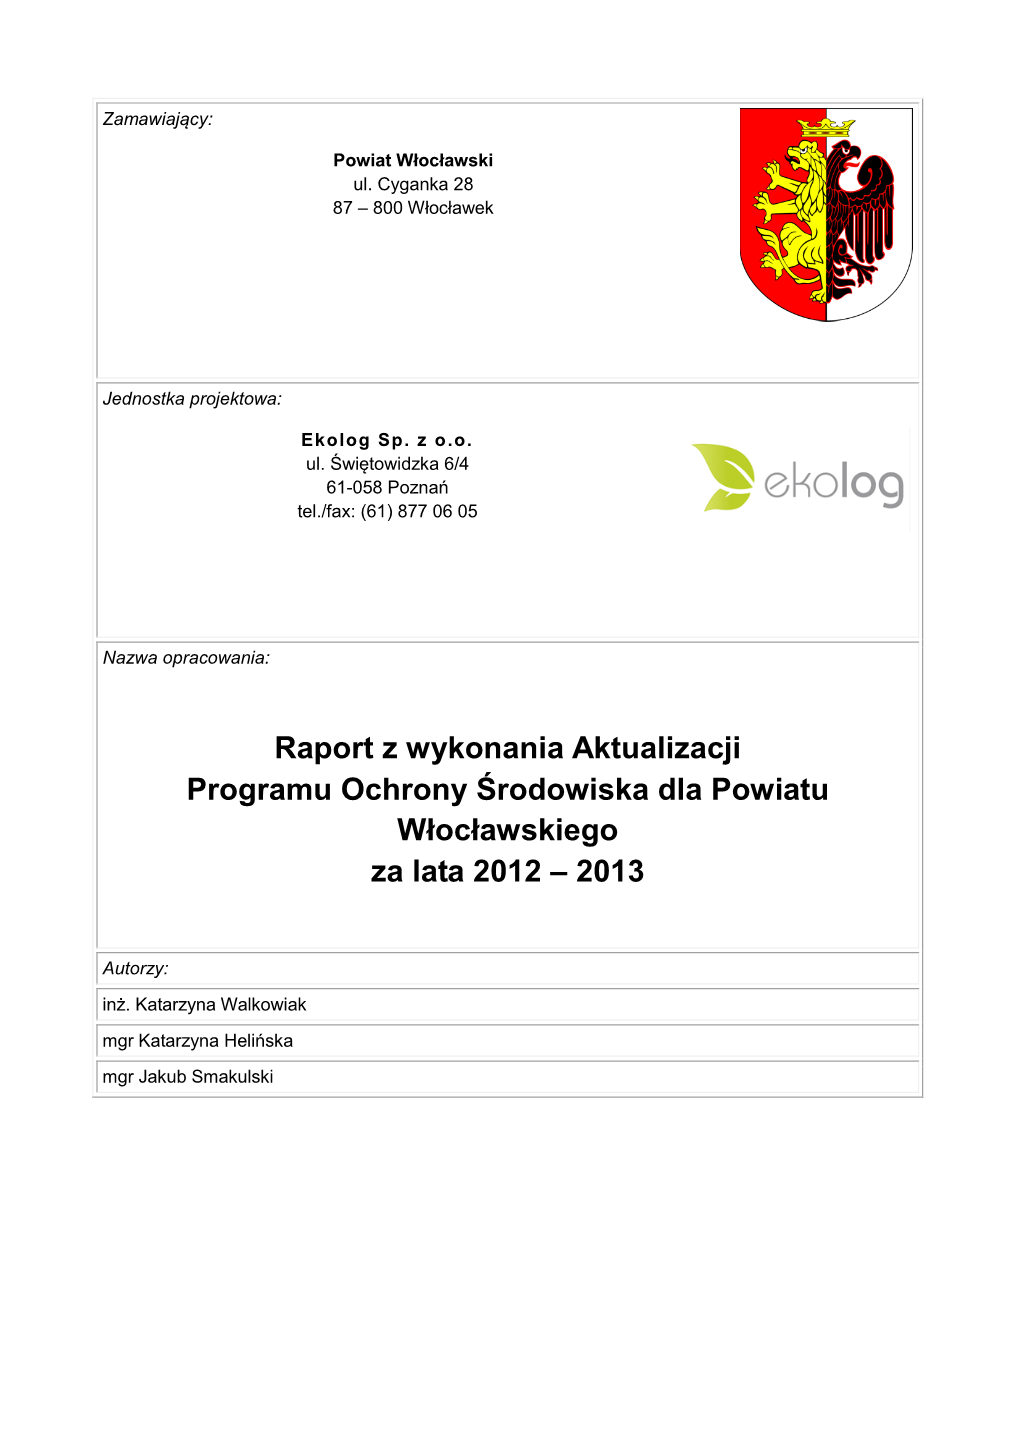 Raport Z Wykonania Aktualizacji Programu Ochrony Środowiska Dla Powiatu Włocławskiego Za Lata 2012 – 2013